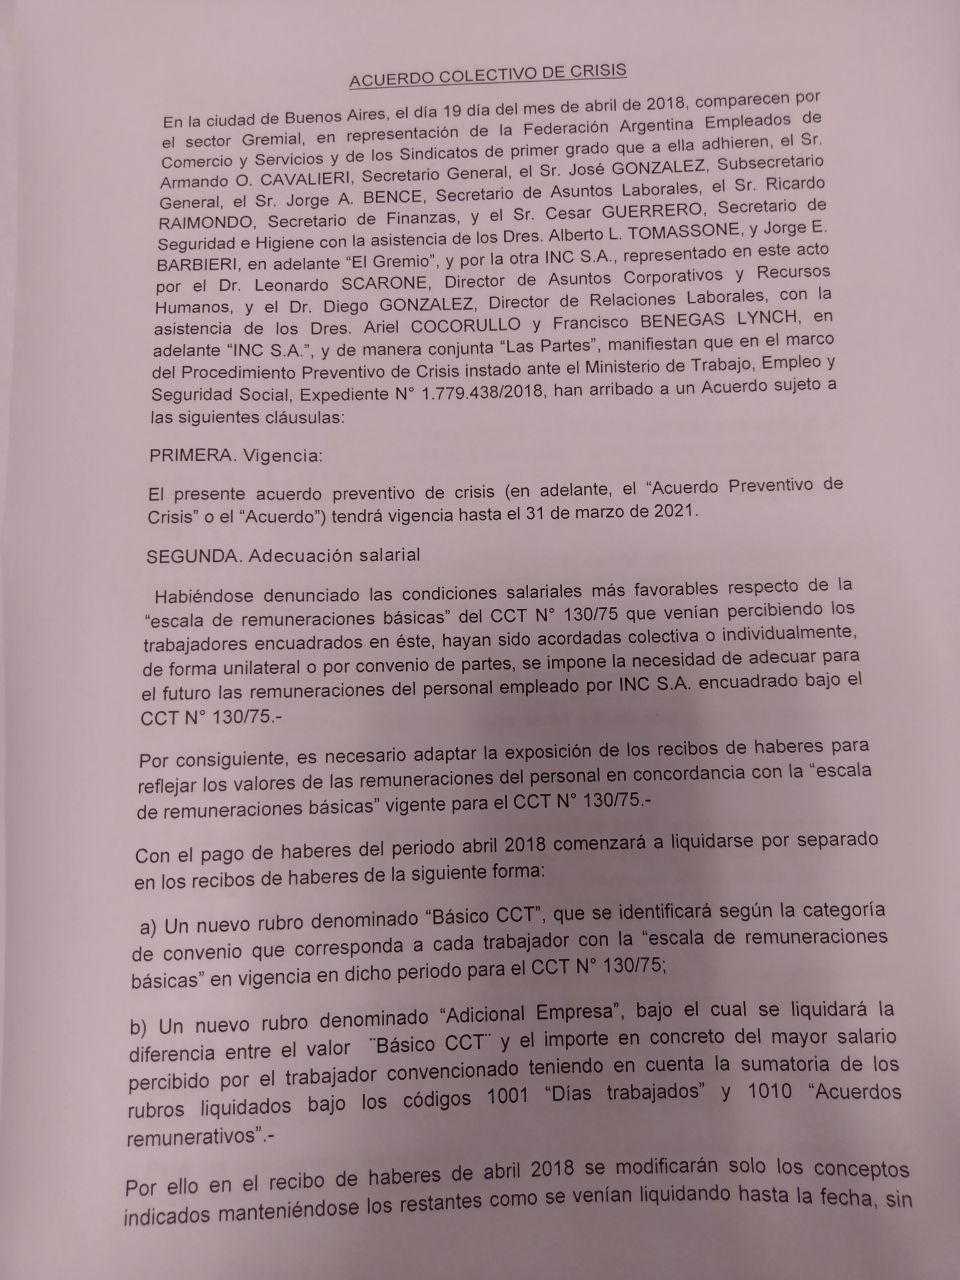 #Exclusivo El acuerdo que convalida la reforma laboral de hecho en Carrefour